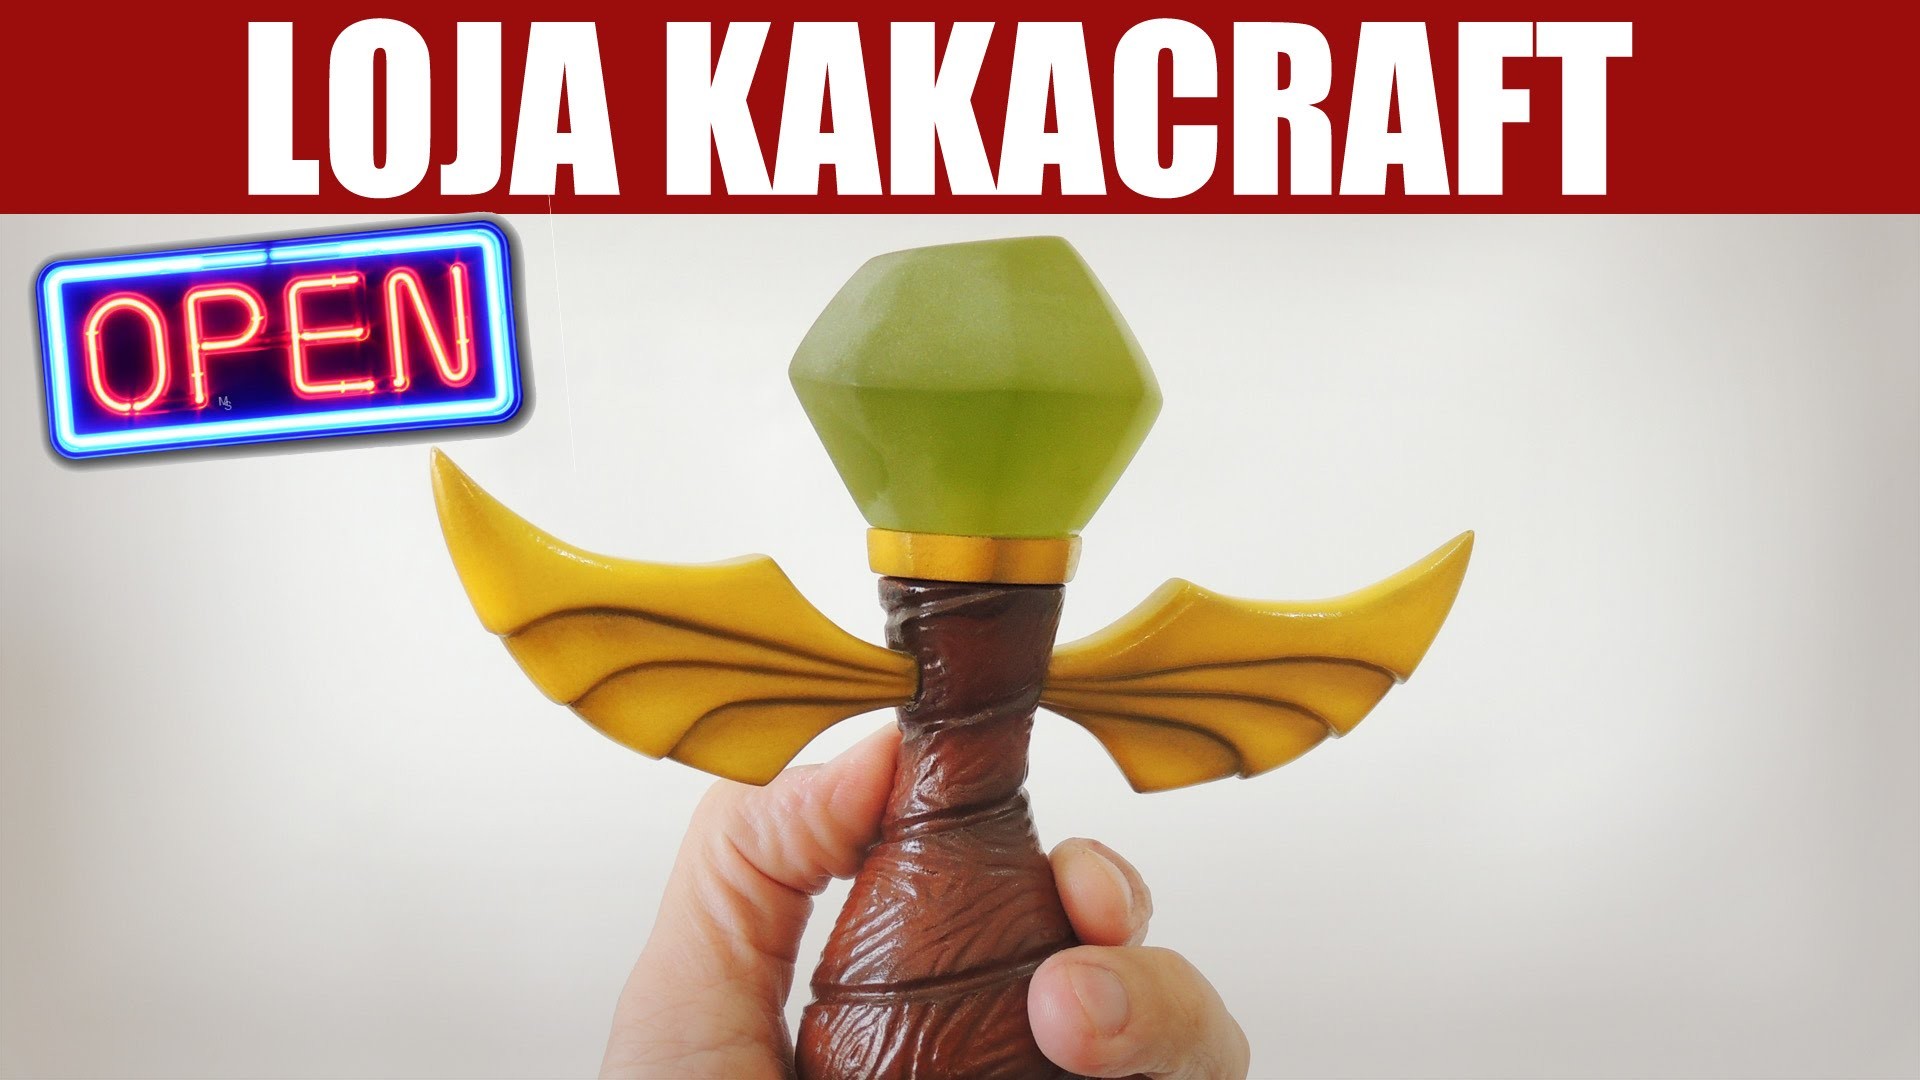 Vlog: Loja do Kakacraft ABERTA!